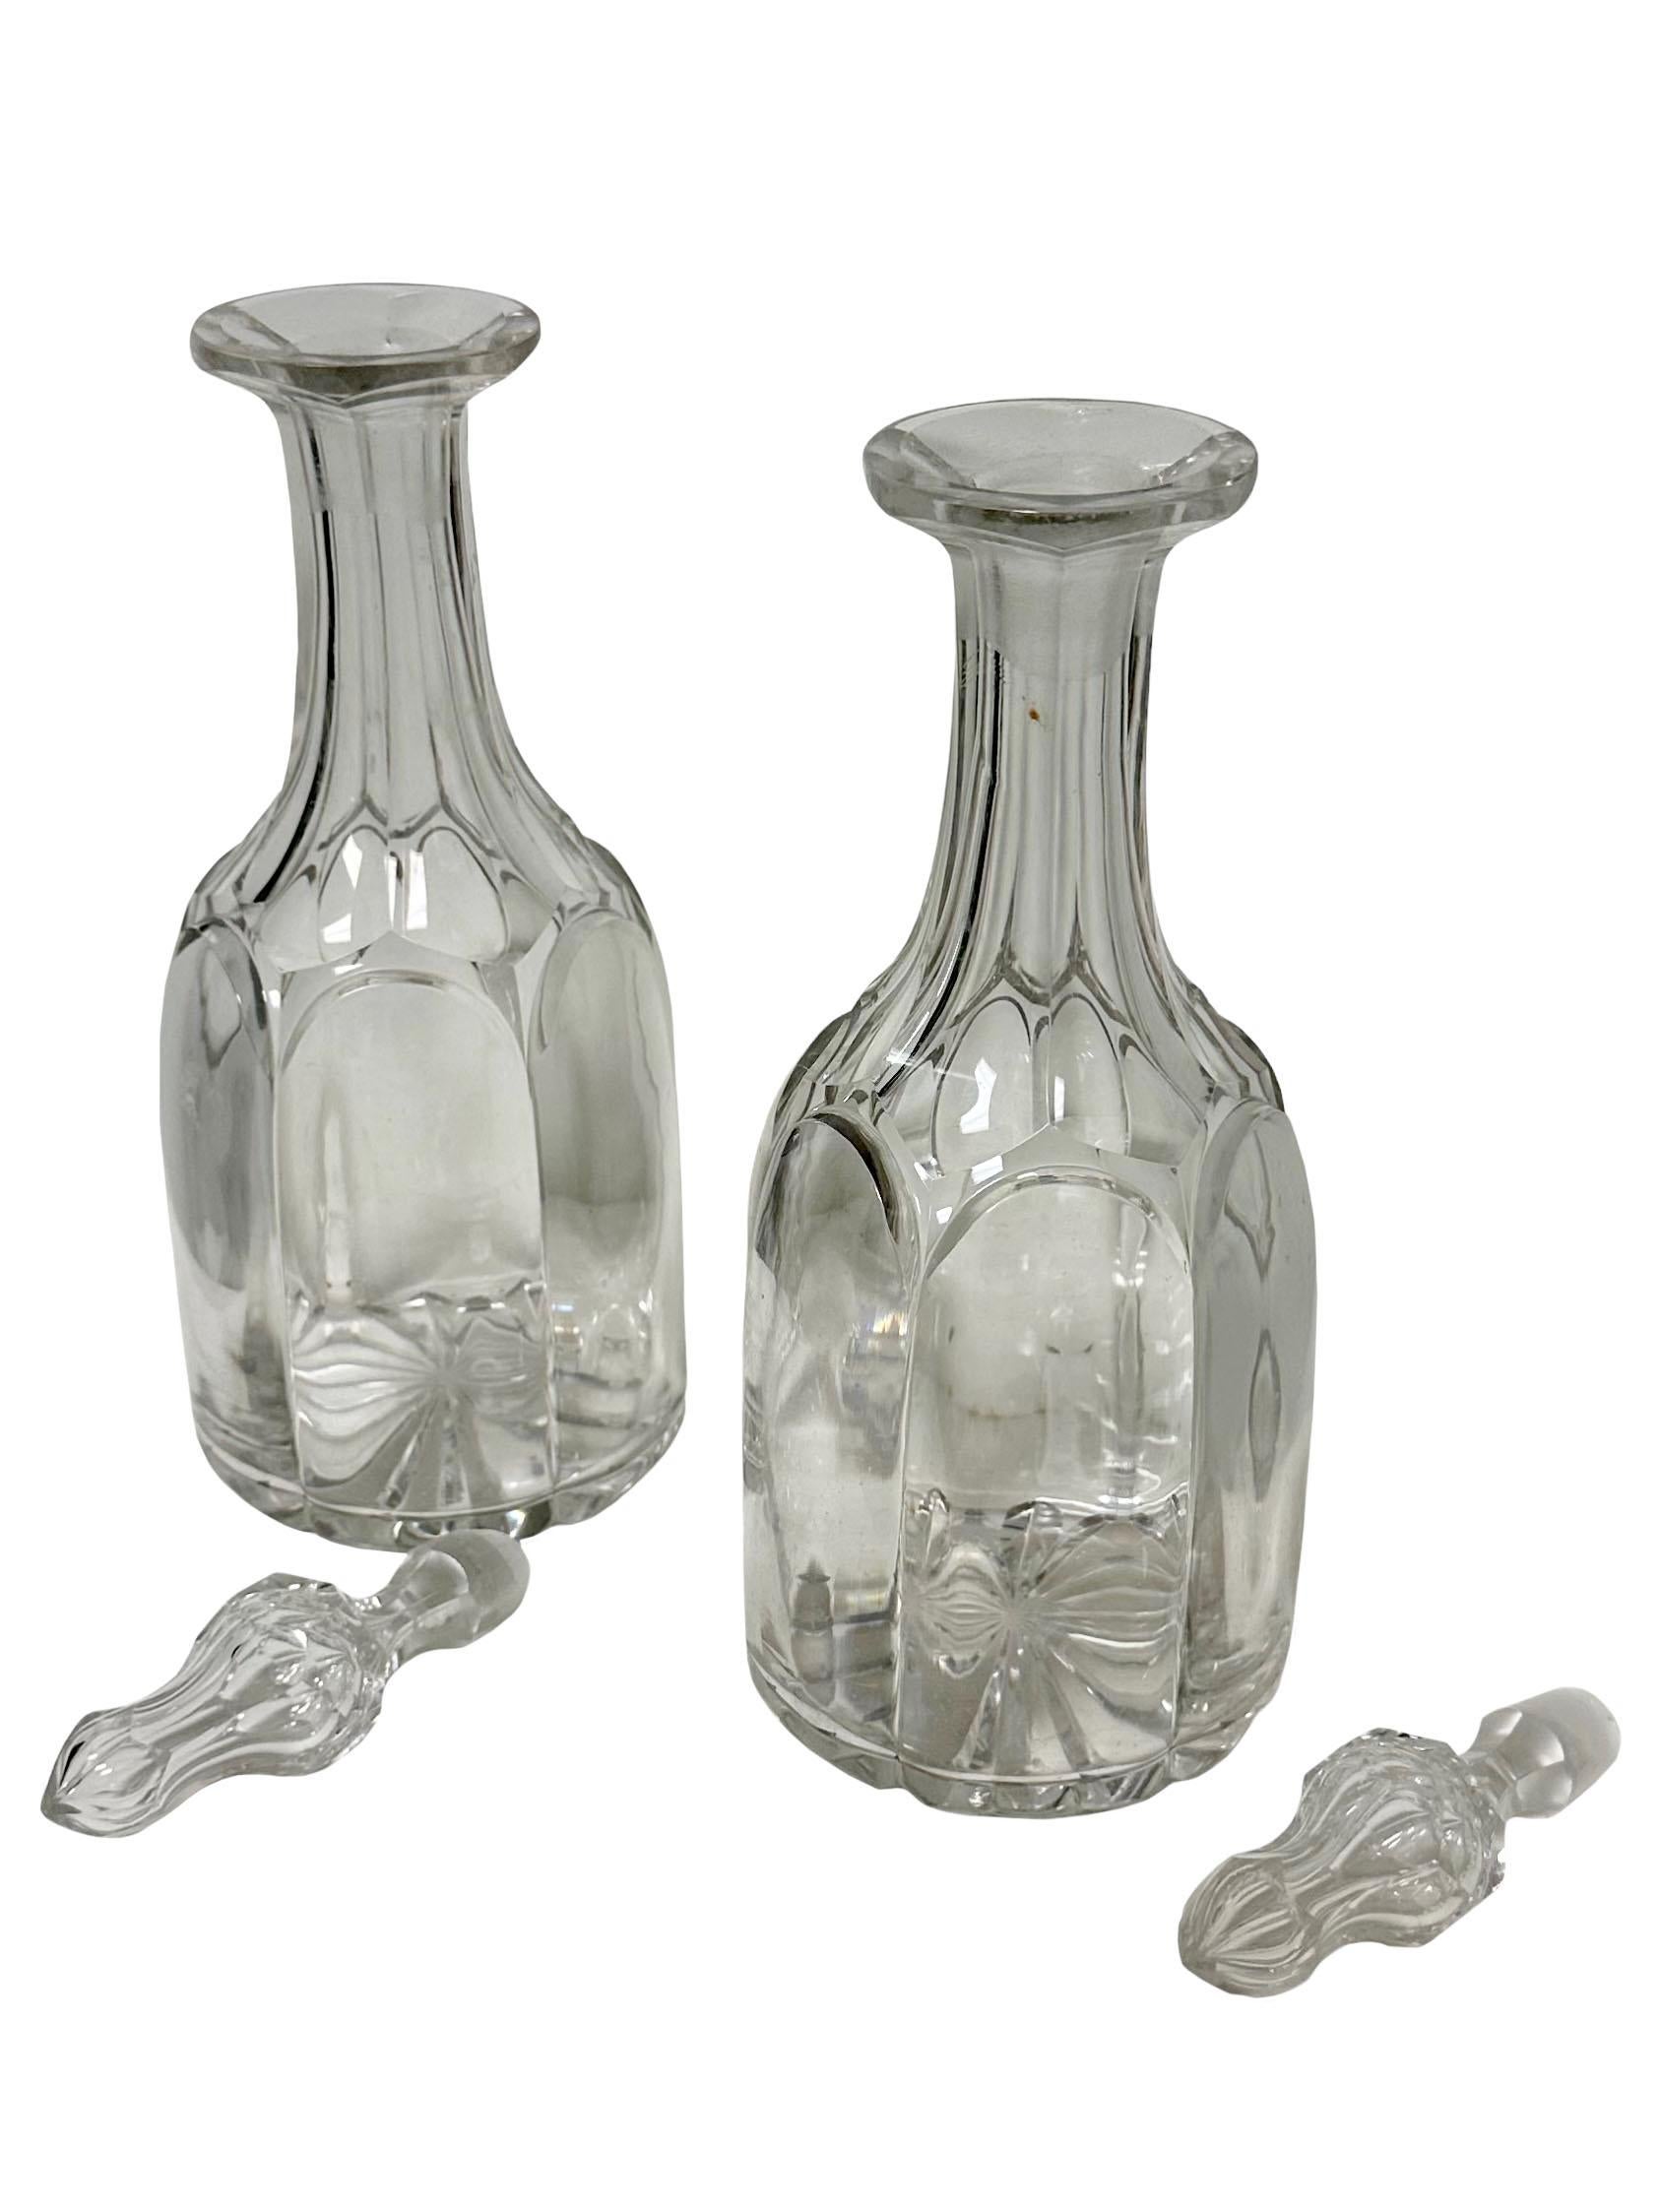 Dies ist ein schönes Paar handgeschliffener und mundgeblasener Bleikristalldekanter mit schönen Endstücken. Sie sind etwa 1820 bis 1830 und wahrscheinlich entweder irischen oder schottischen, aber schönes Beispiel der frühen Glas. hey sind in gutem